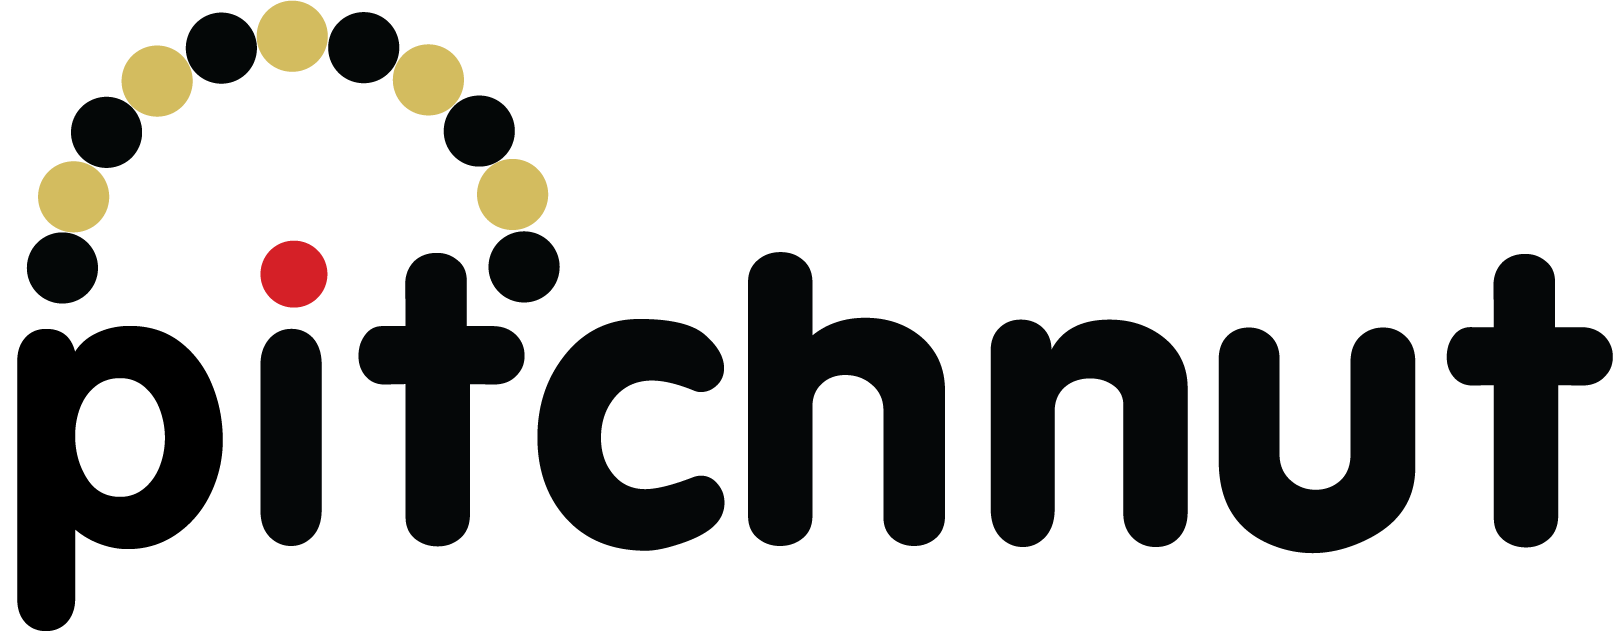 Pitchnut logo